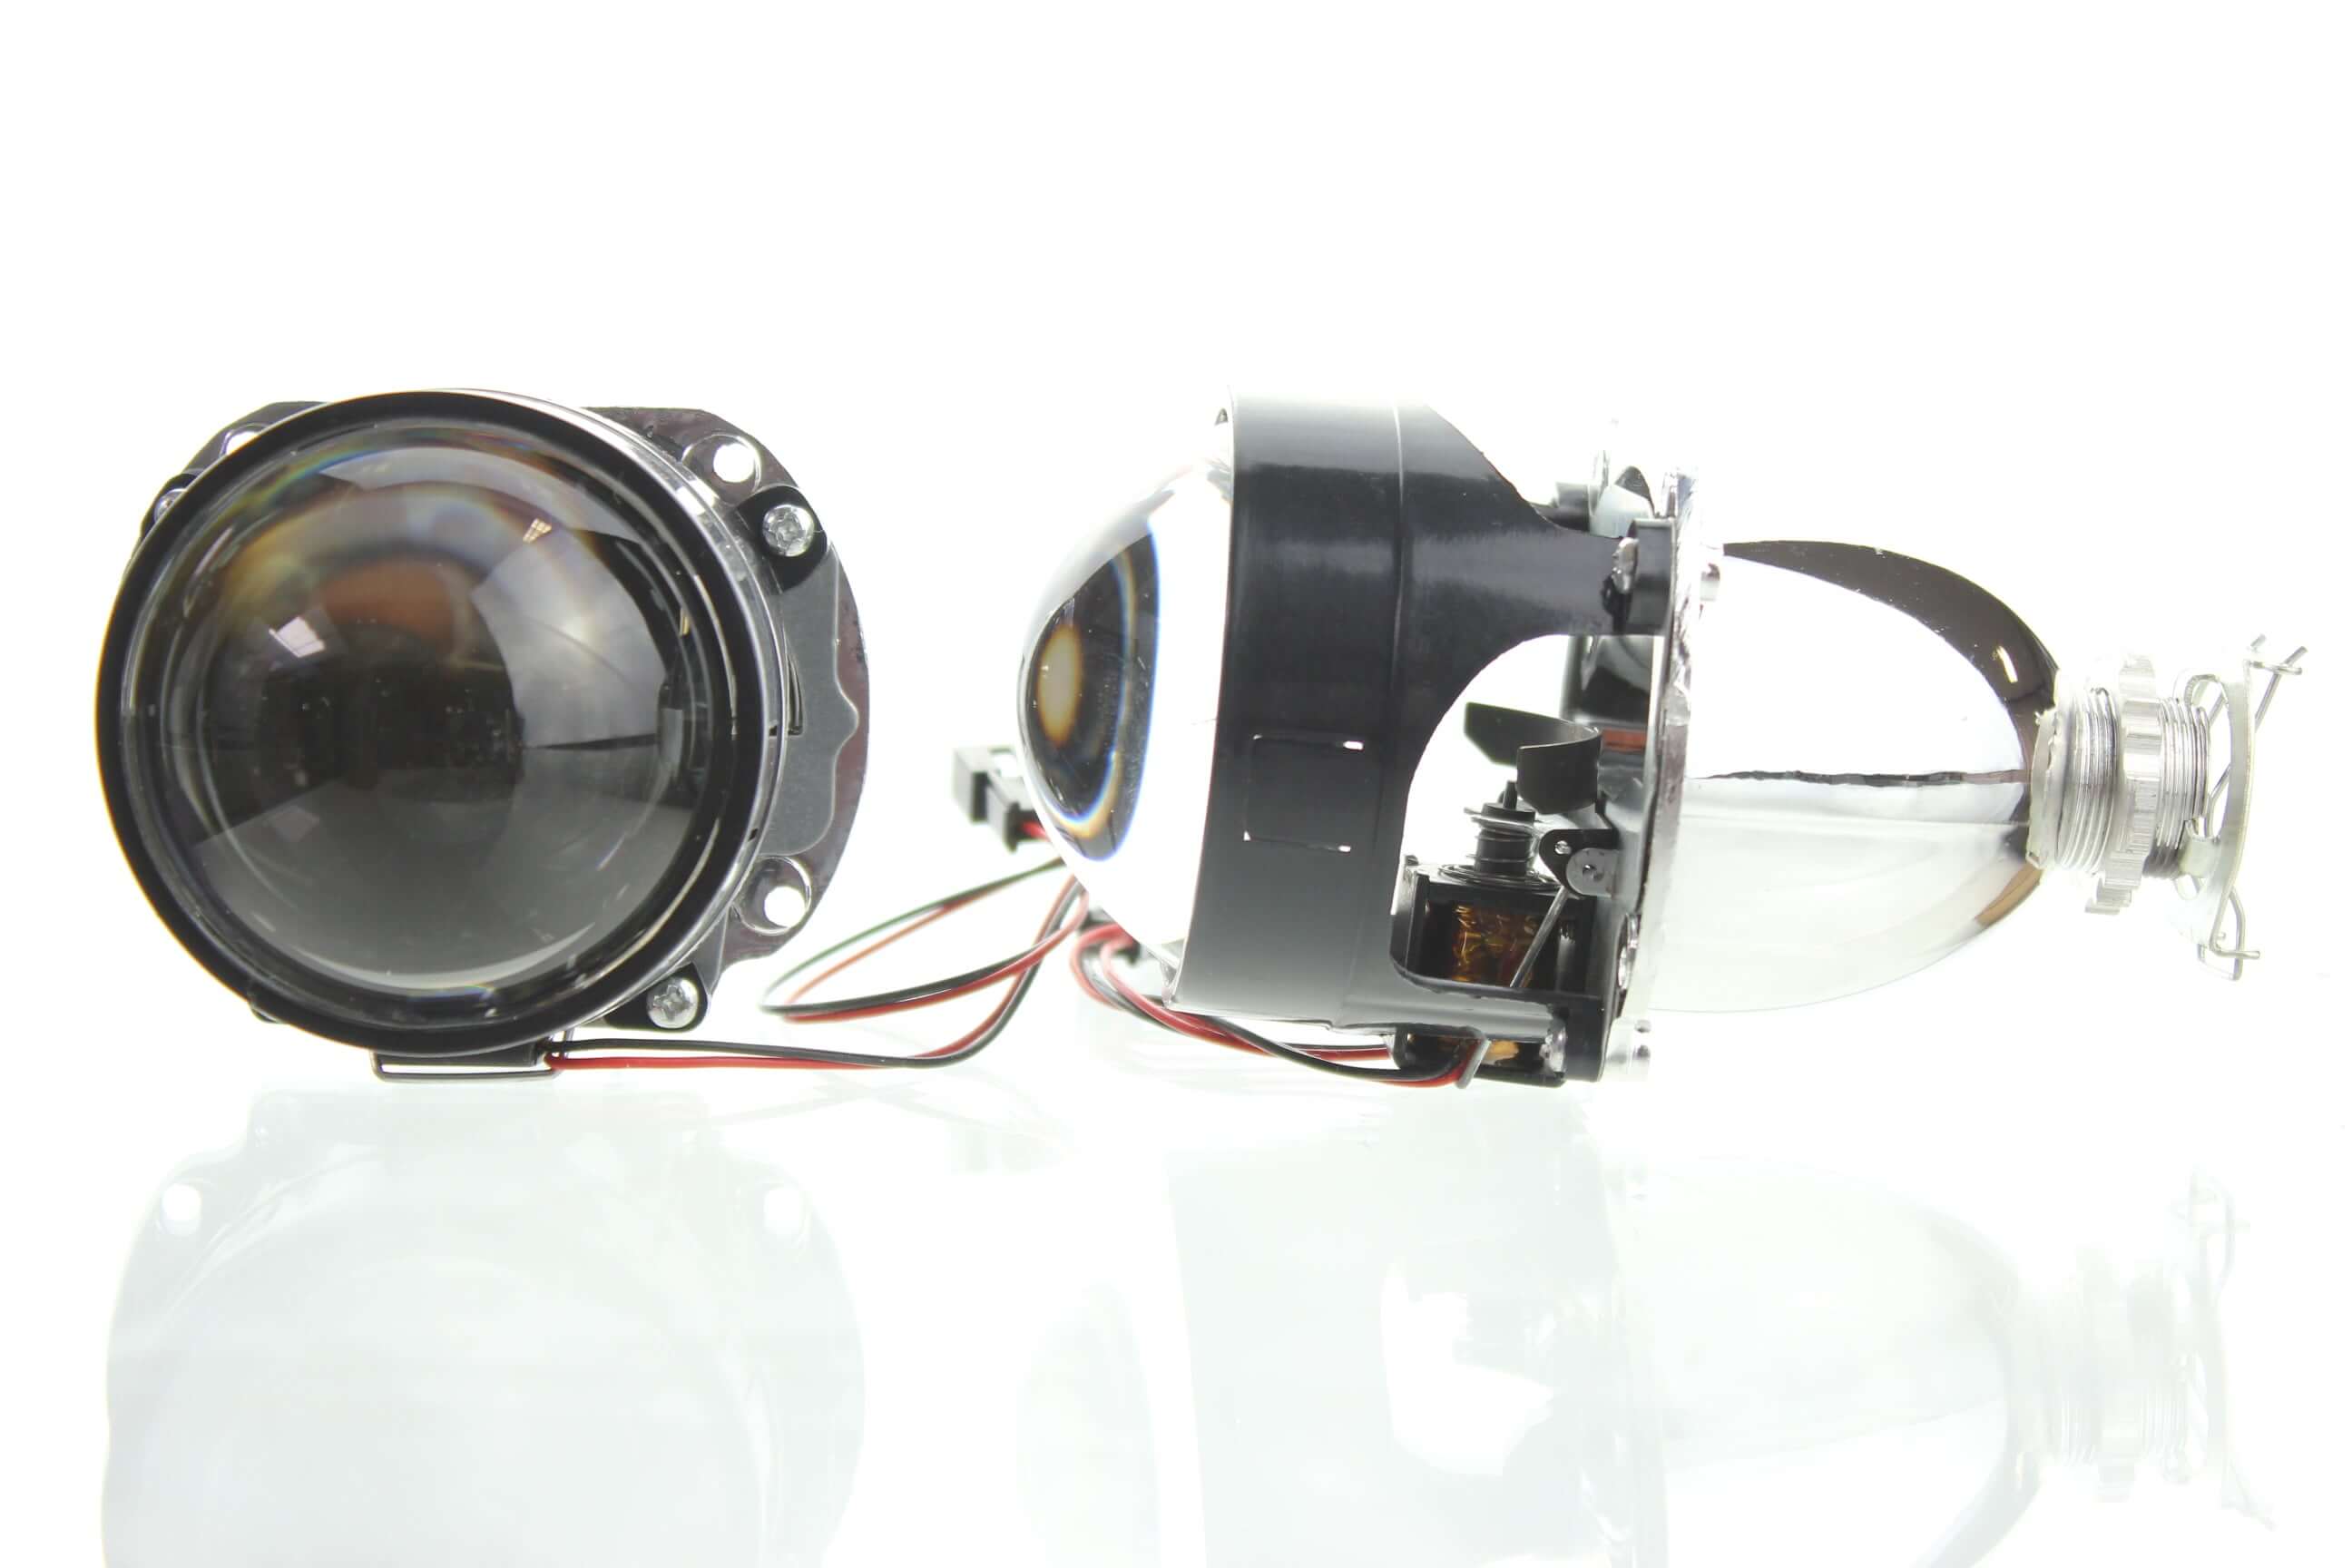 Aharon Mini H1 Primo - Bi-xenon projectors - Retrofitlab